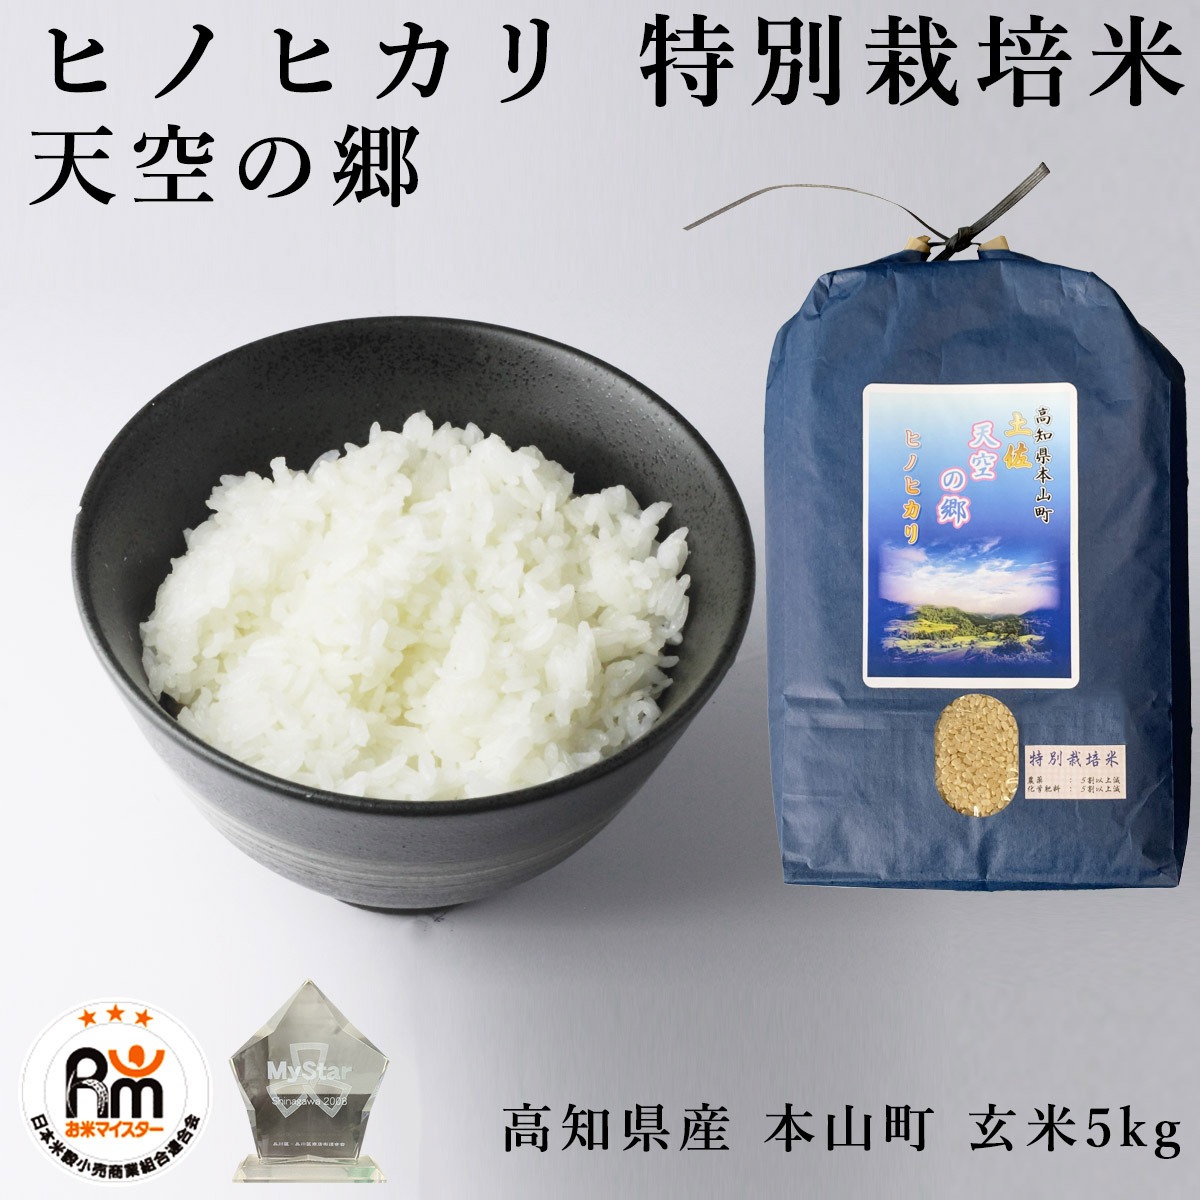 古代米入り自然栽培米 1.8kg 農薬化学肥料動物性堆肥一切不使用